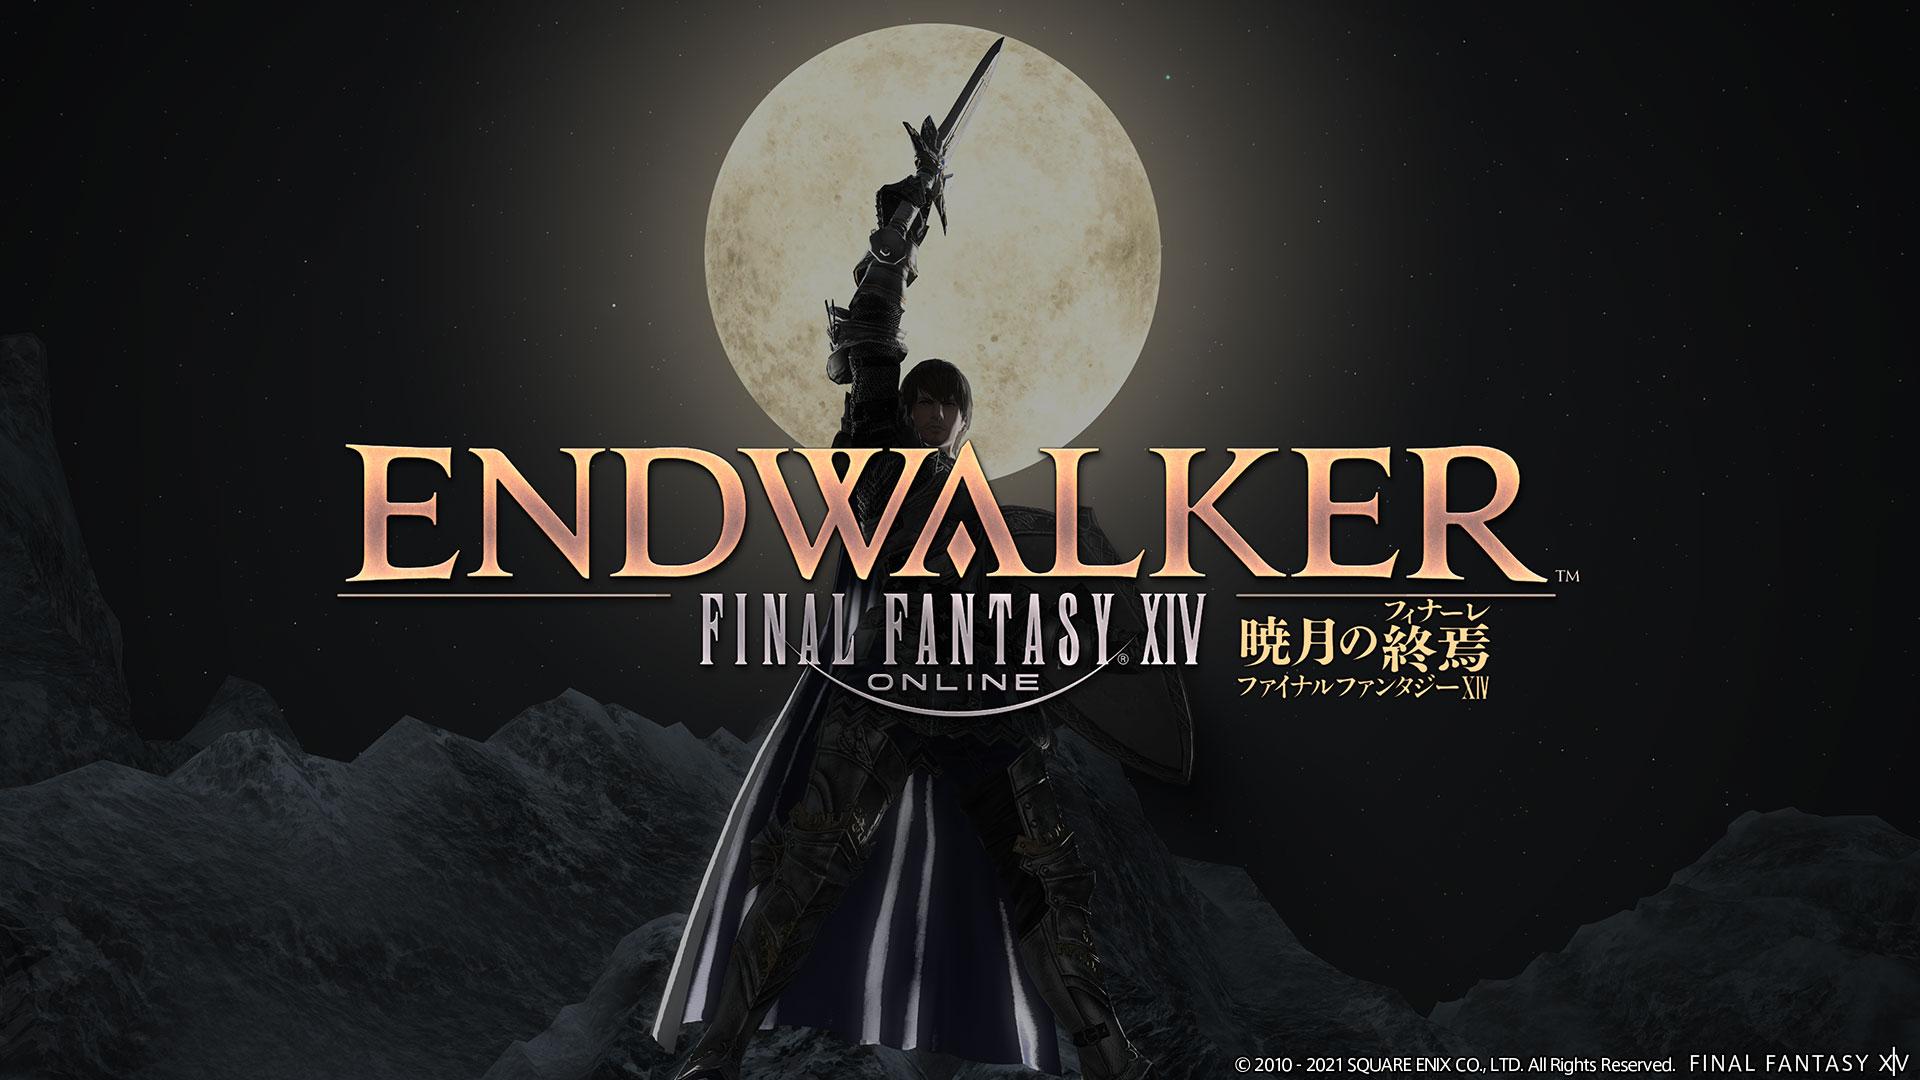 Final Fantasy XIV Endwalker with Paladin